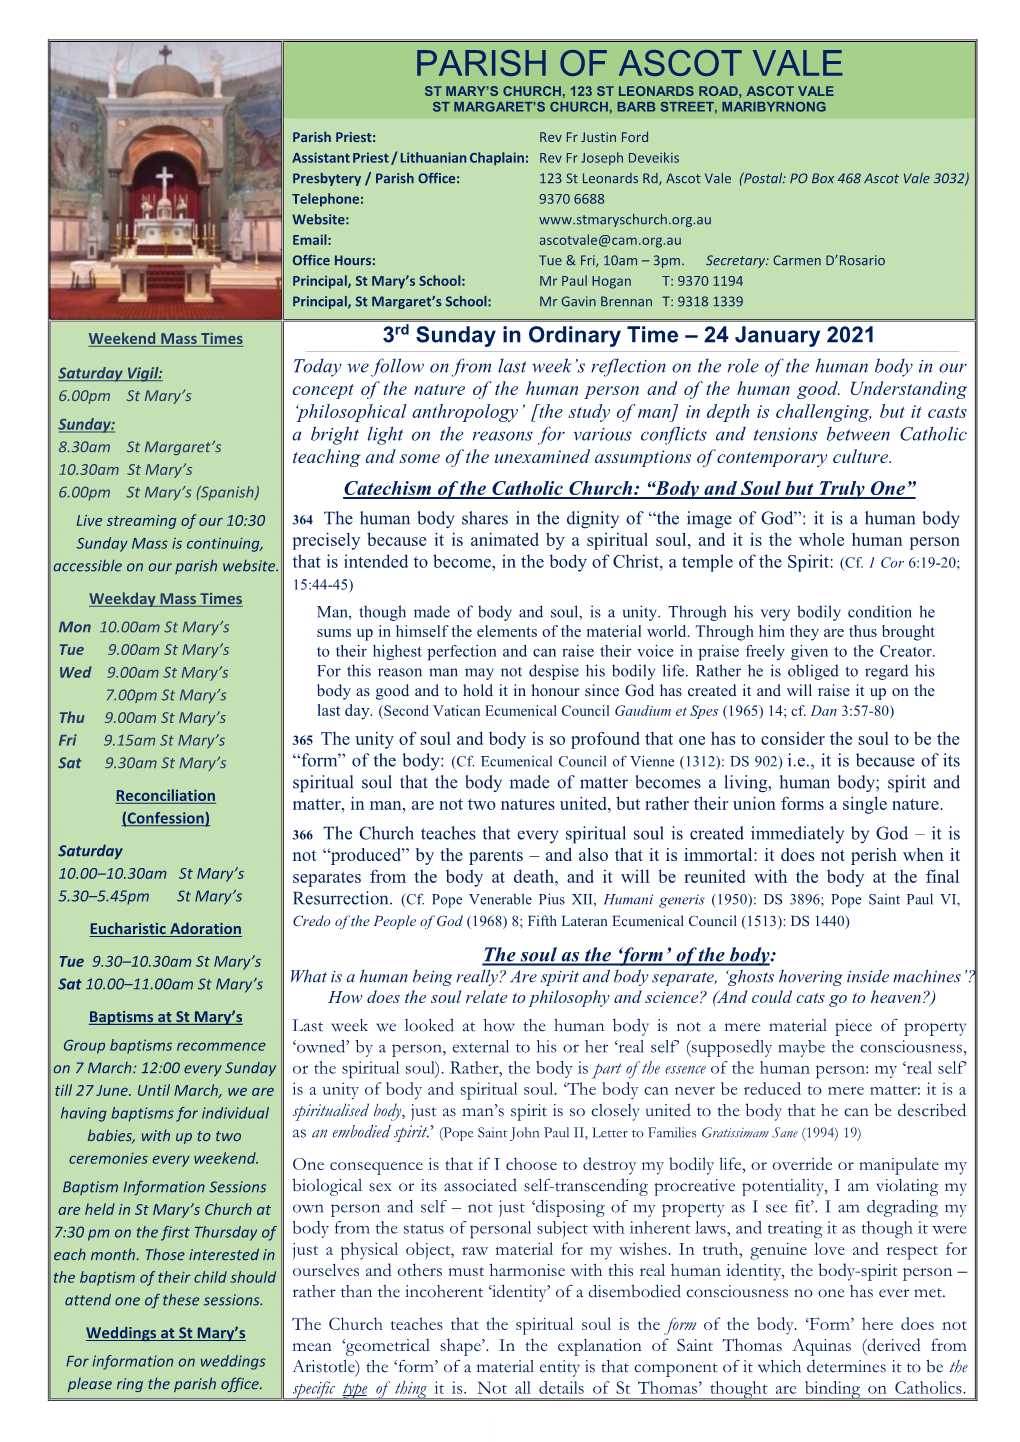 Parish Bulletin, 24 January 2021